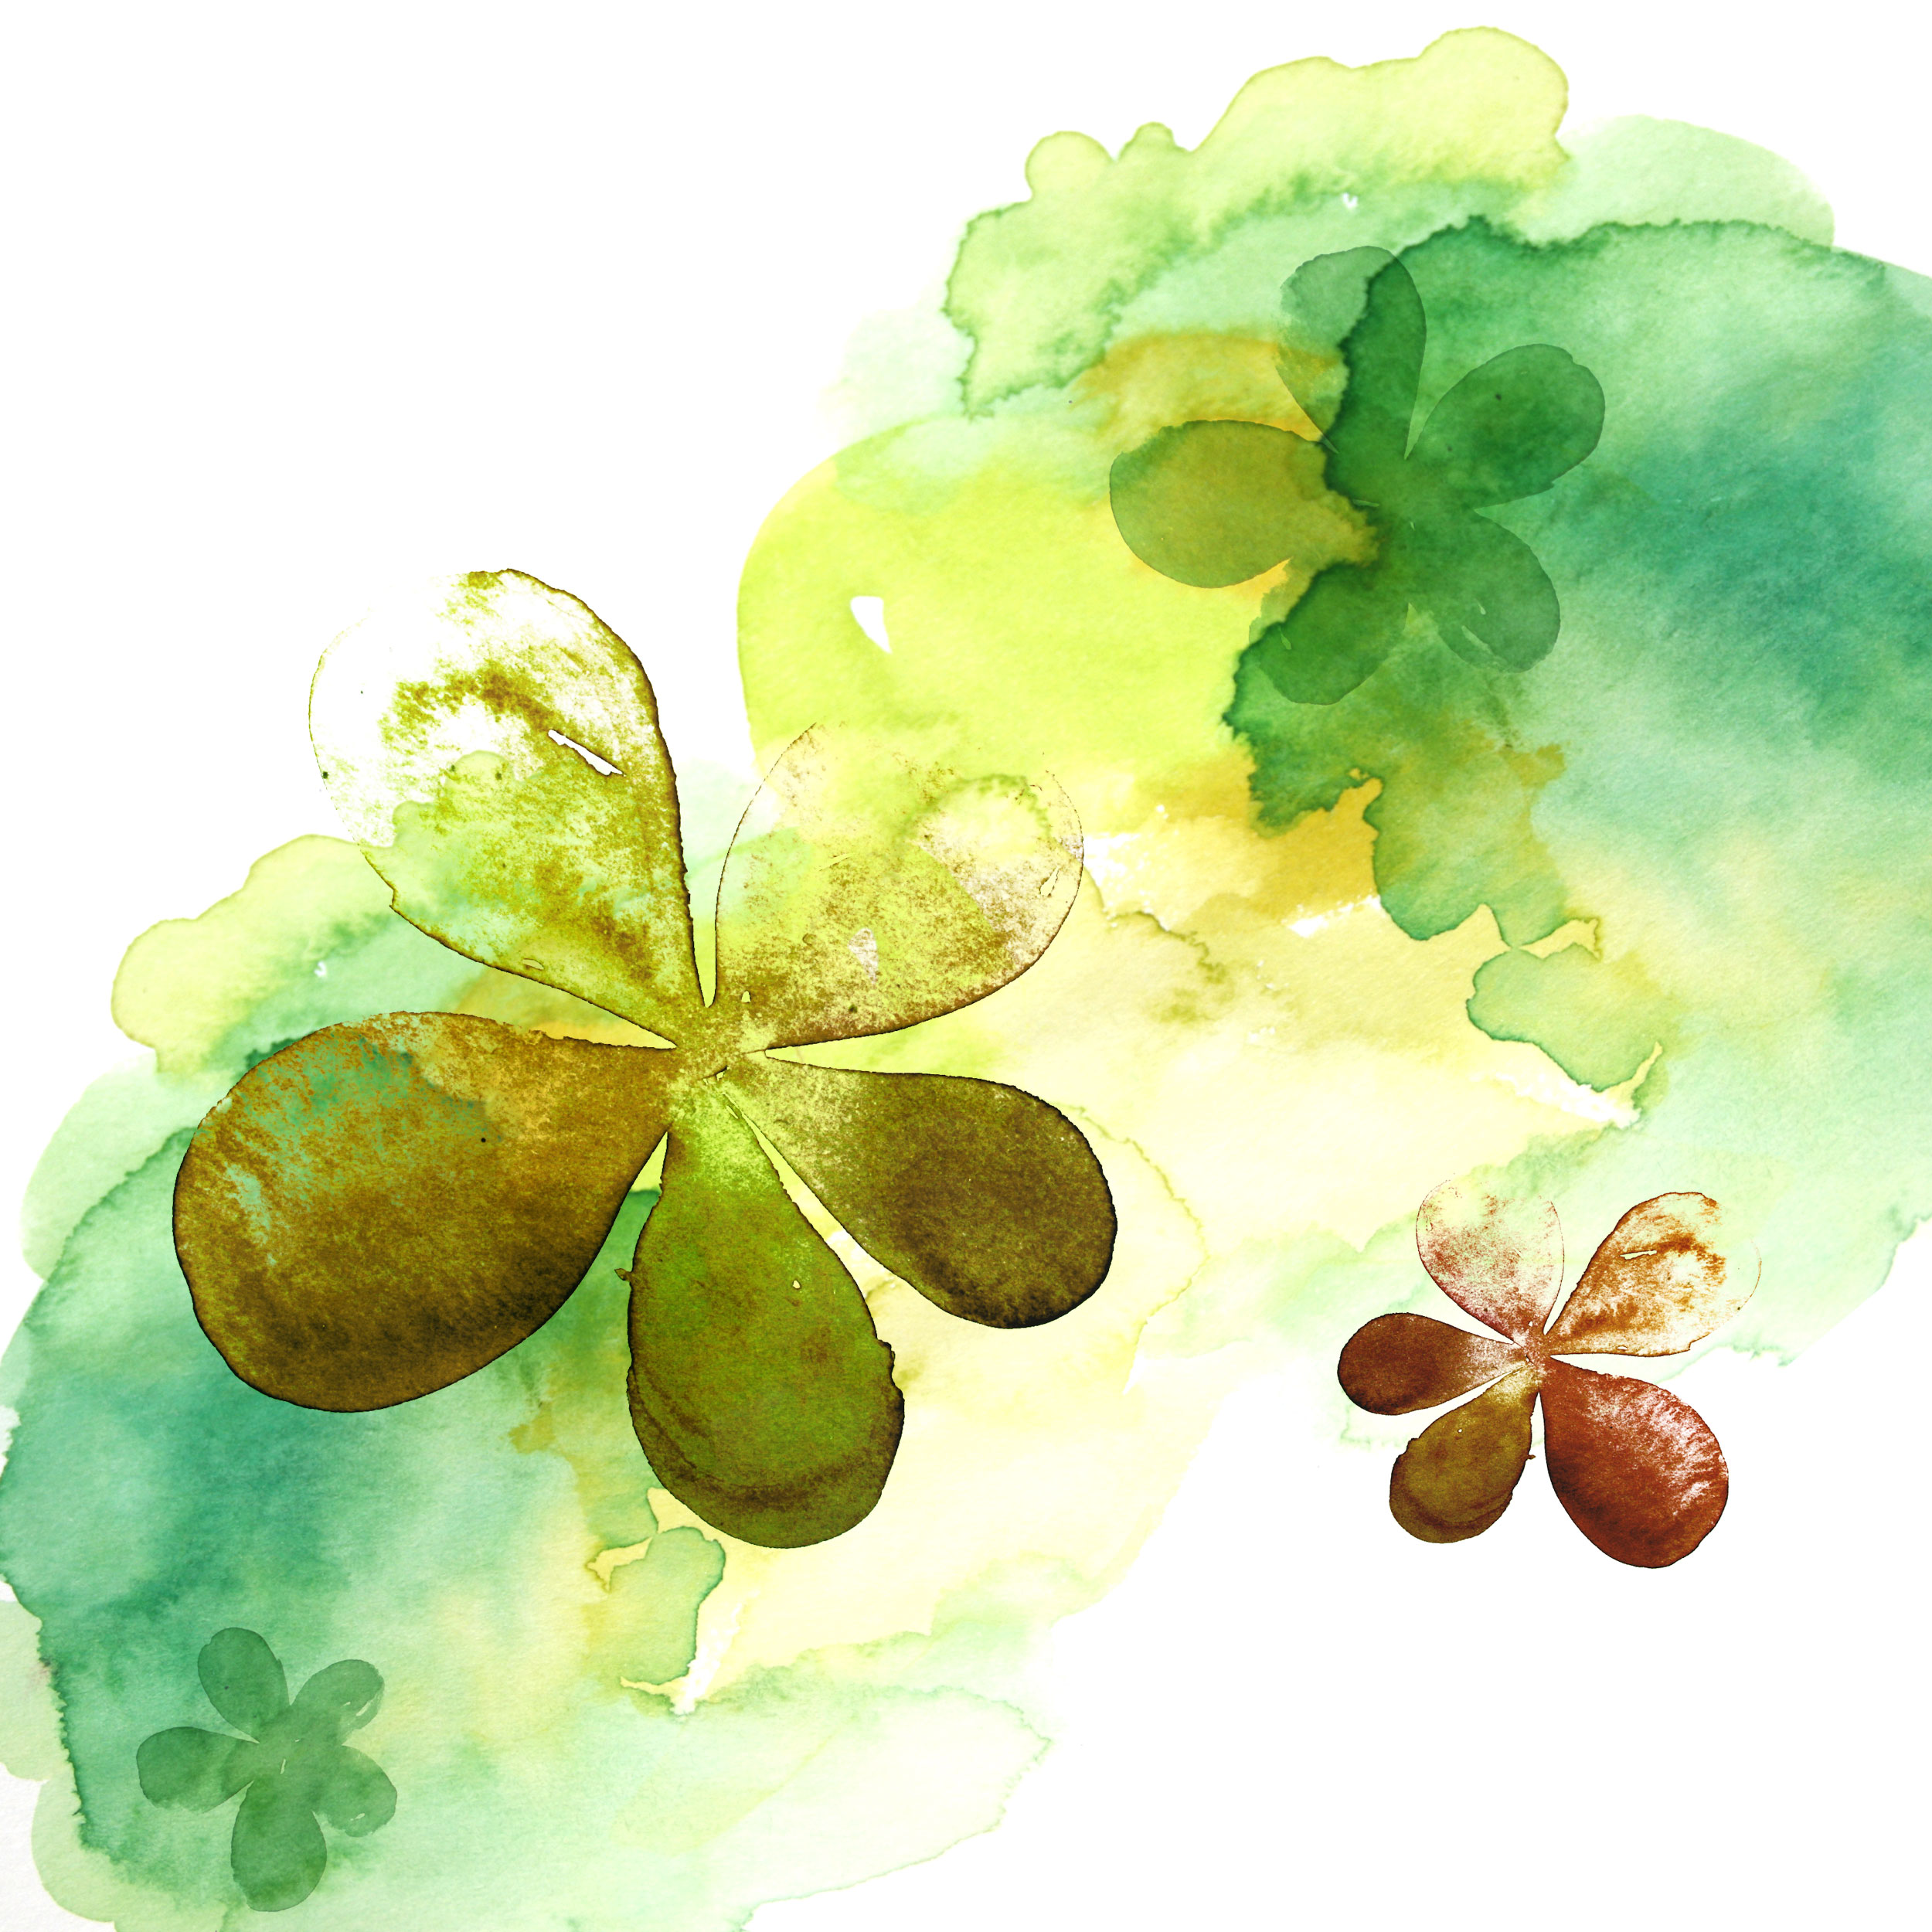 葉っぱや草木のイラスト 壁紙 背景no 095 黄緑 水彩画 絵の具